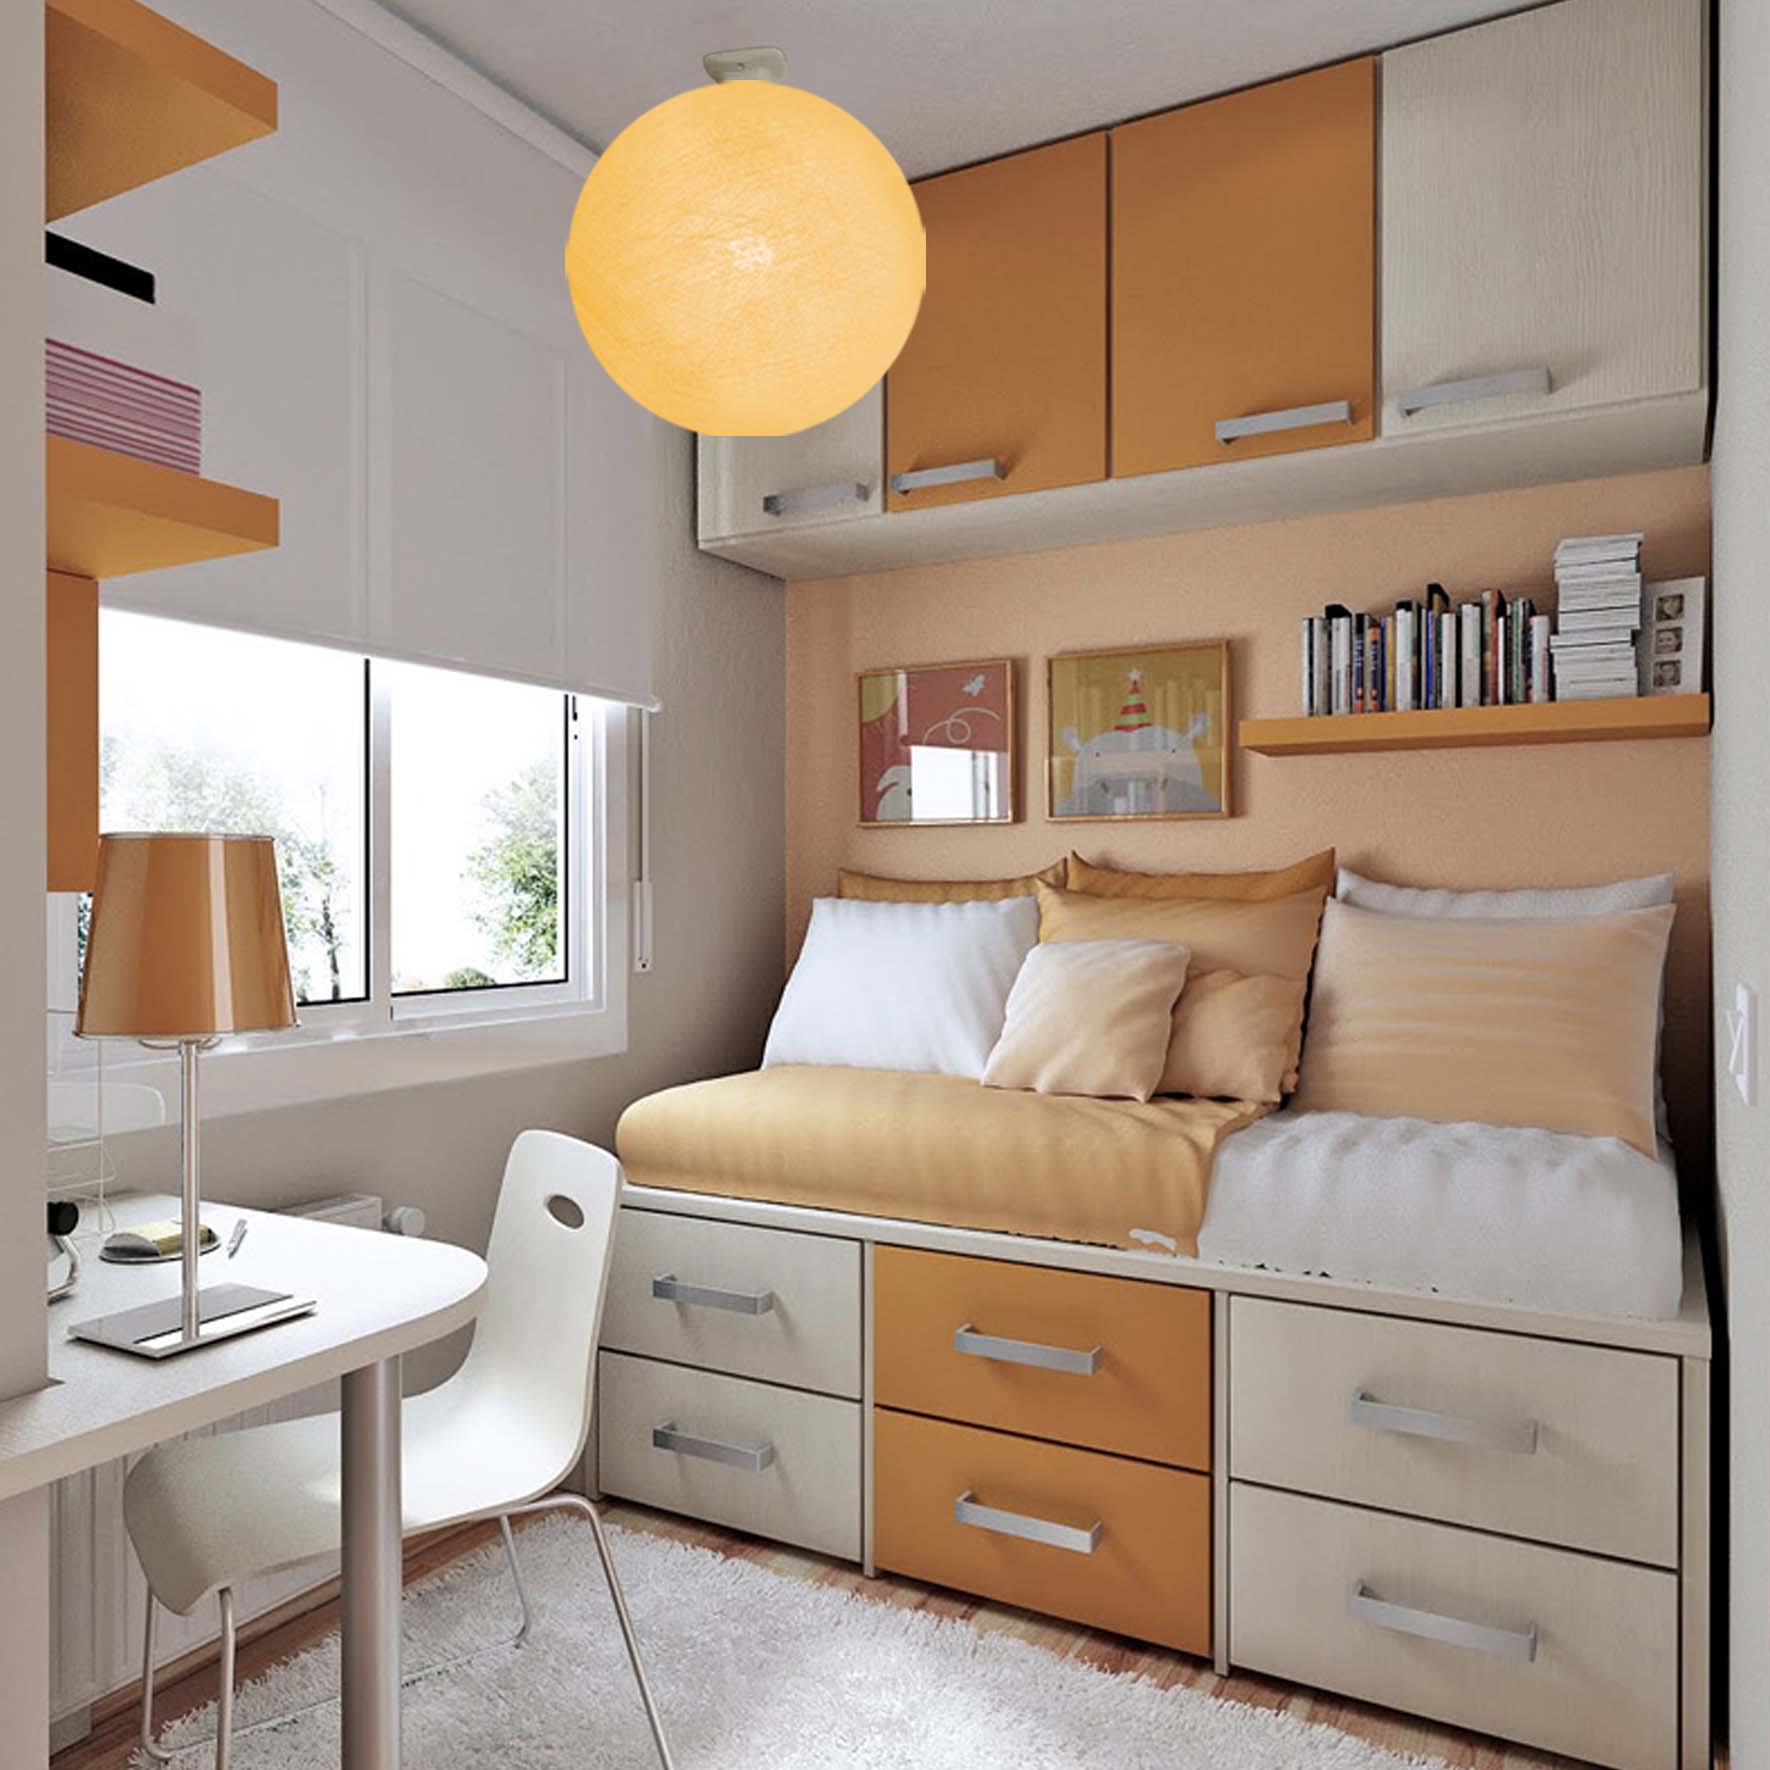 Как в маленькой комнате все разместить. дизайн маленьких комнат (фото): примеры идеального оформления, выбор цвета и стиля, планировка и зонирование